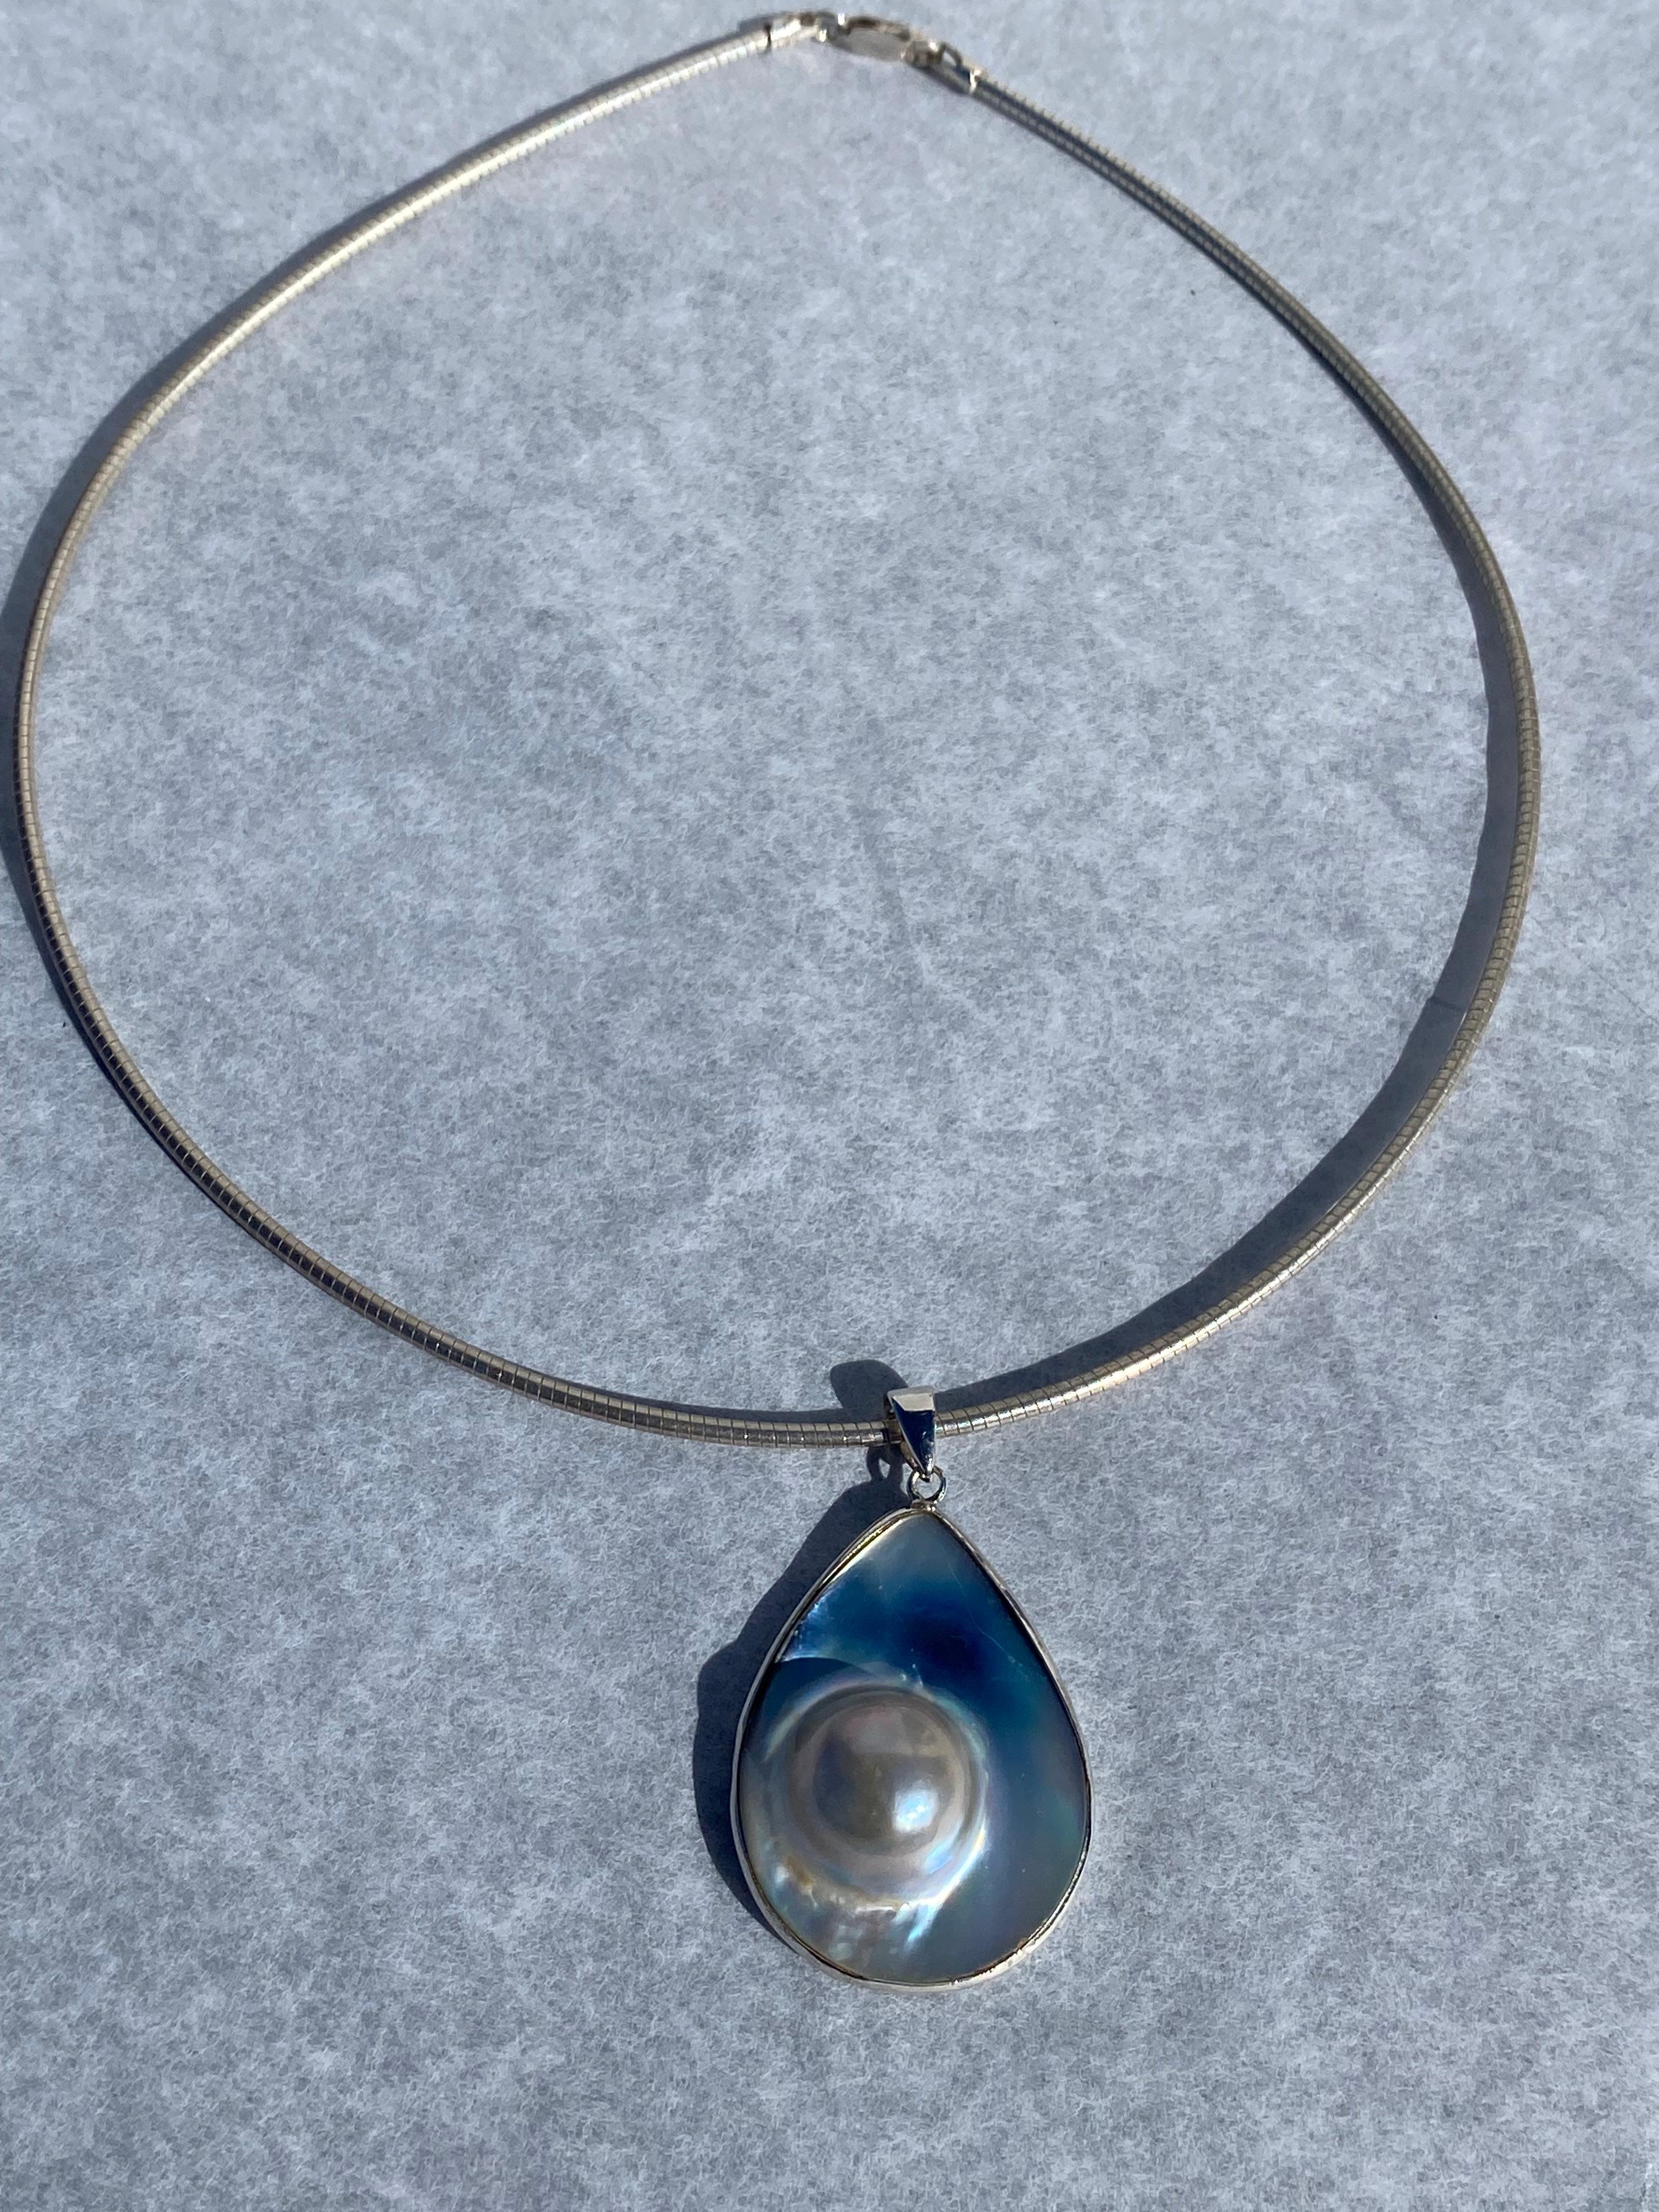 Collier en nacre et perle irisée, fil métallique, pendentif Excellent état - En vente à Laguna Hills, CA